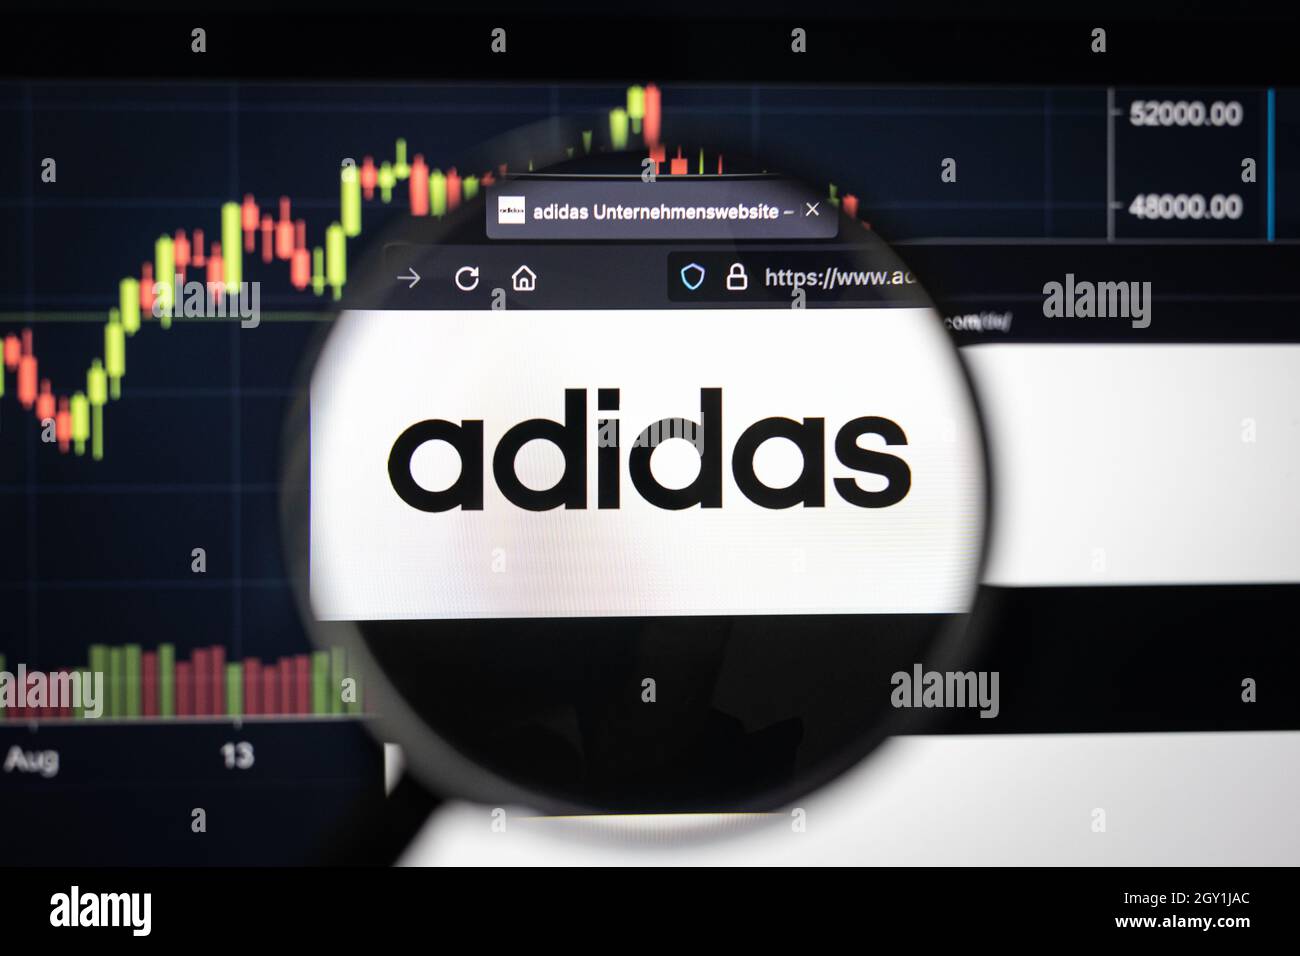 Adidas Firmenlogo auf einer Website mit verschwommenen Börsenentwicklungen im Hintergrund, die auf einem Computerbildschirm durch eine Lupe gesehen werden Stockfoto